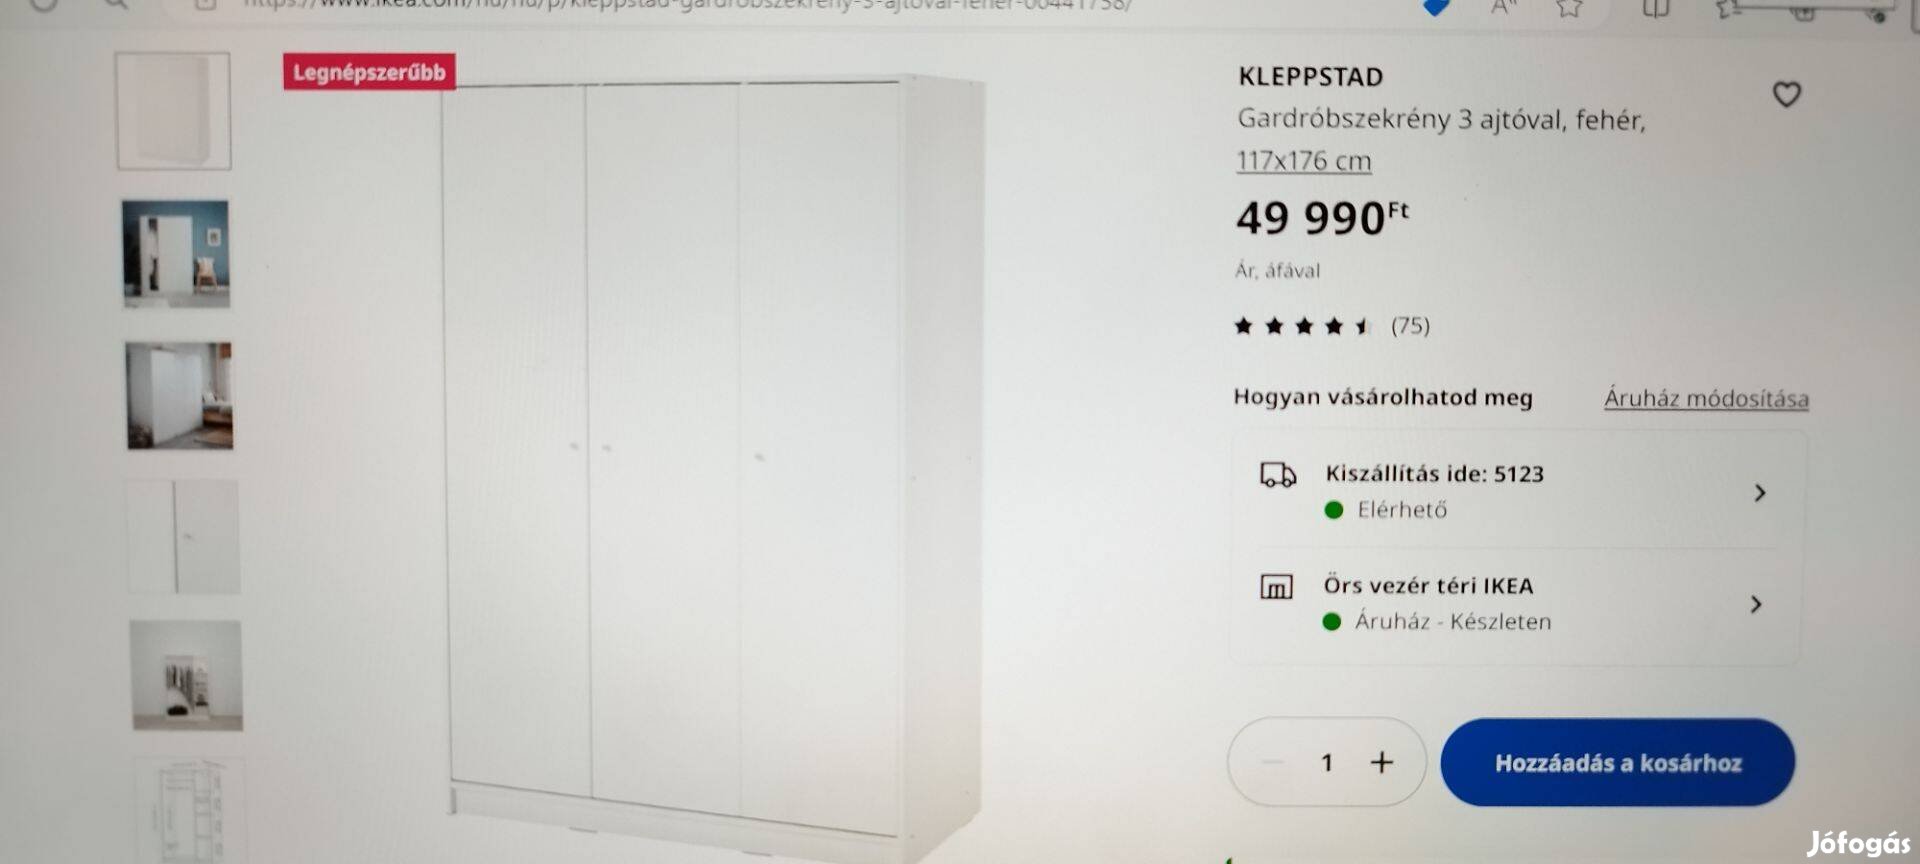 Kleppstad Gardróbszekrény 3 ajtóval, fehér, új